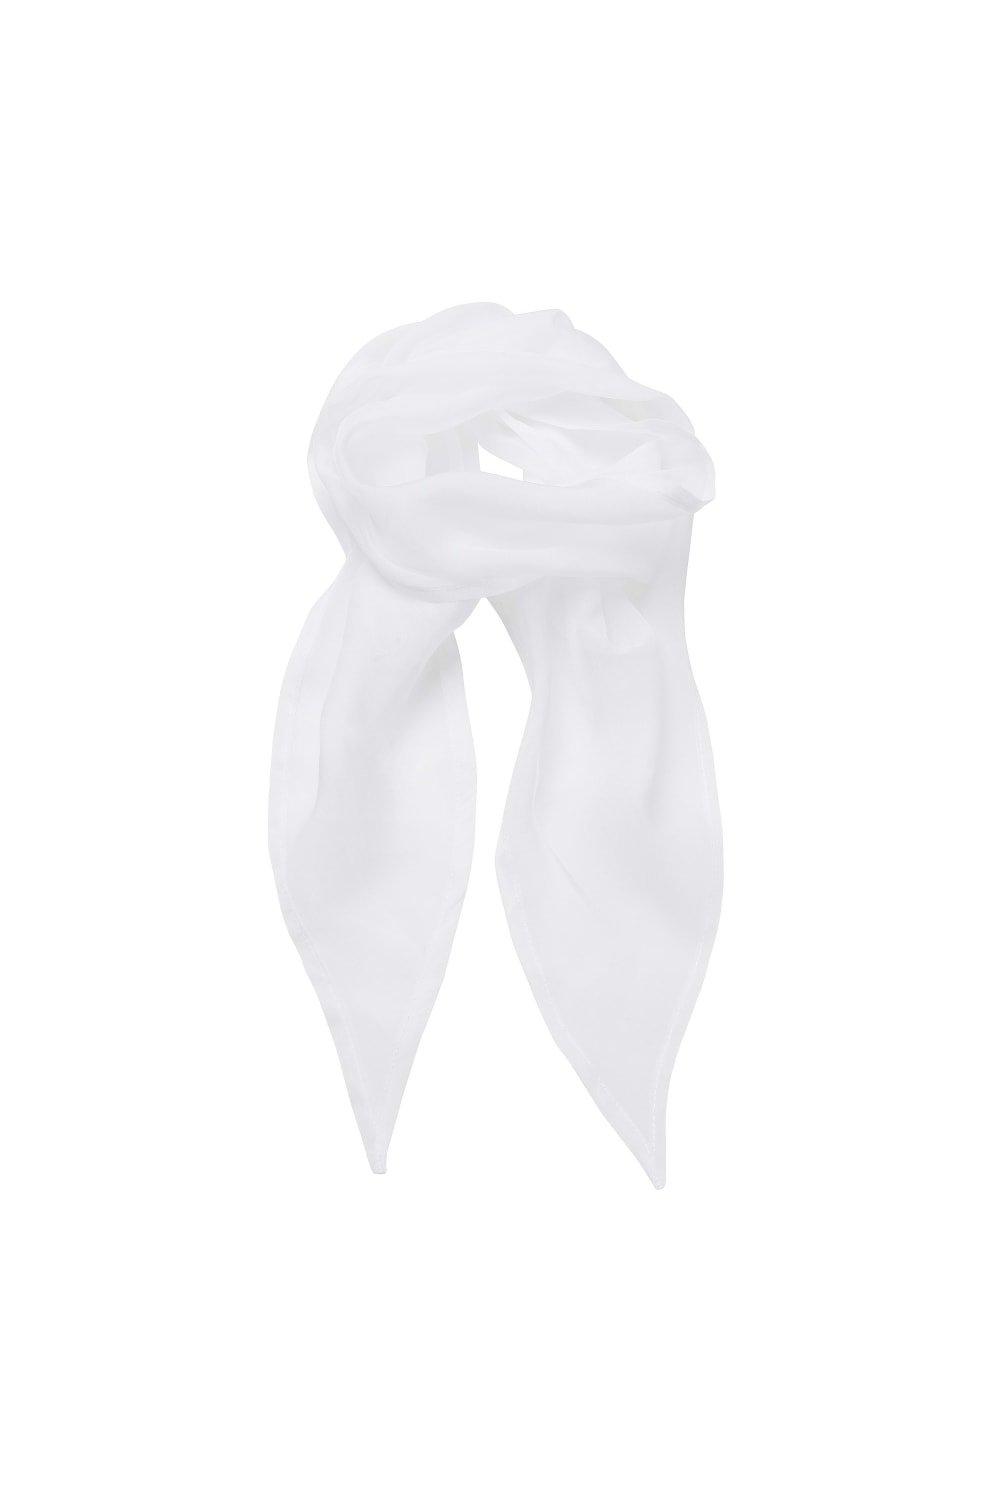 Деловой шифоновый деловой шарф Premier, белый шифоновый радужный цветной шарф женский шарф arn танцевальный шелковый шарф большой размер